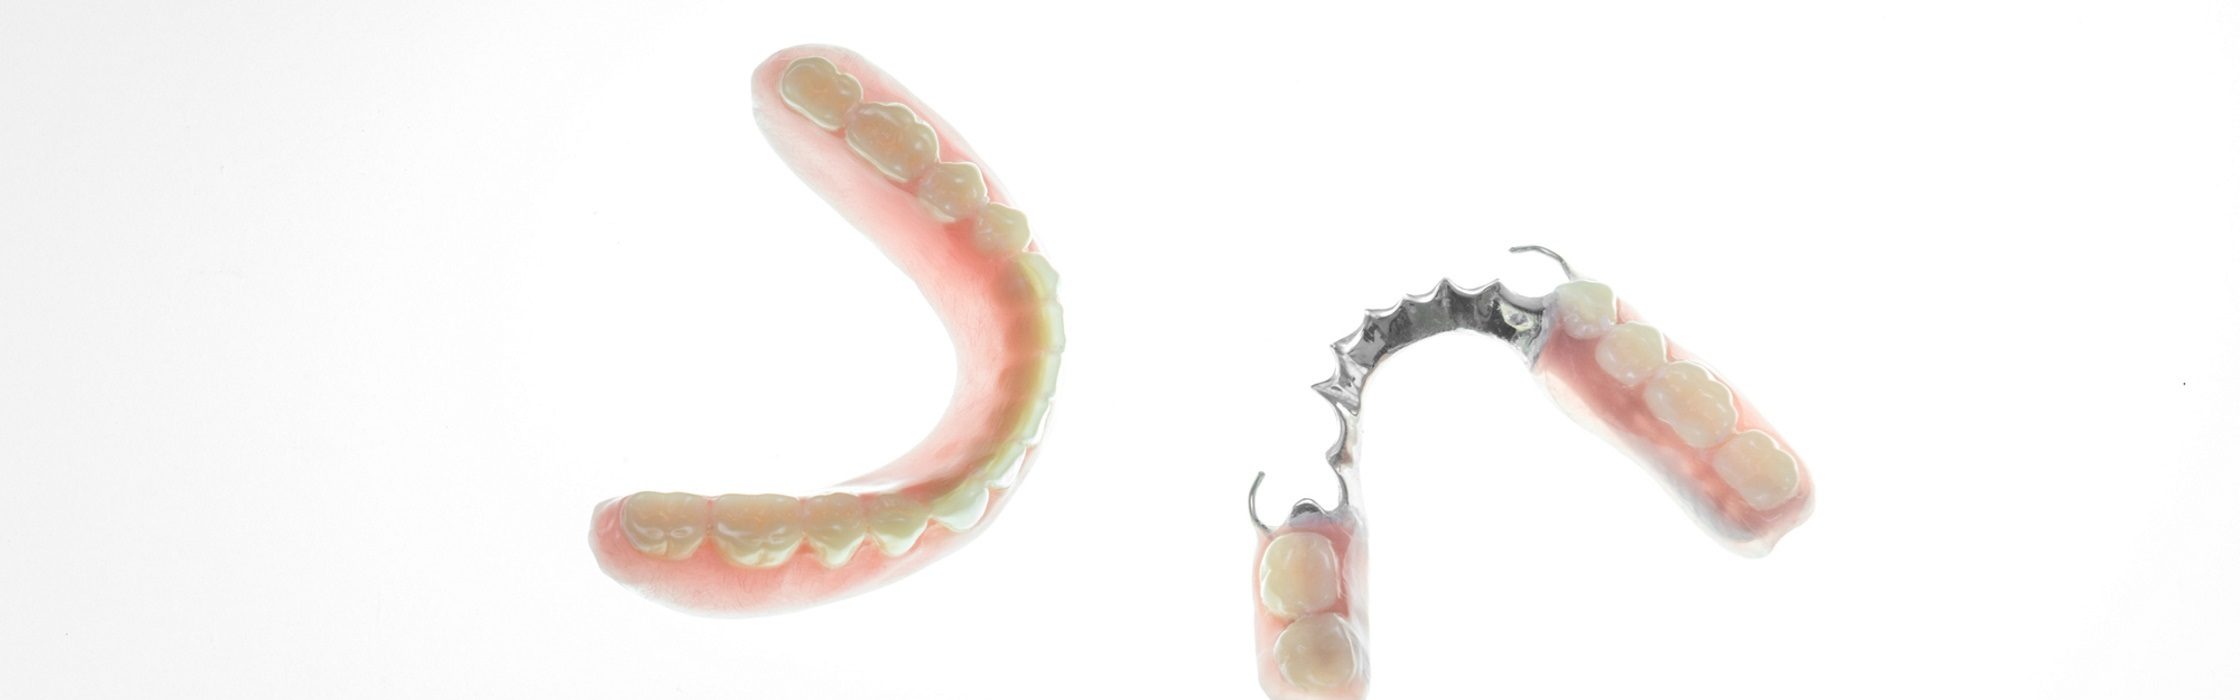 Teilprothese für den Zahn: Oberkiefer und Unterkiefer